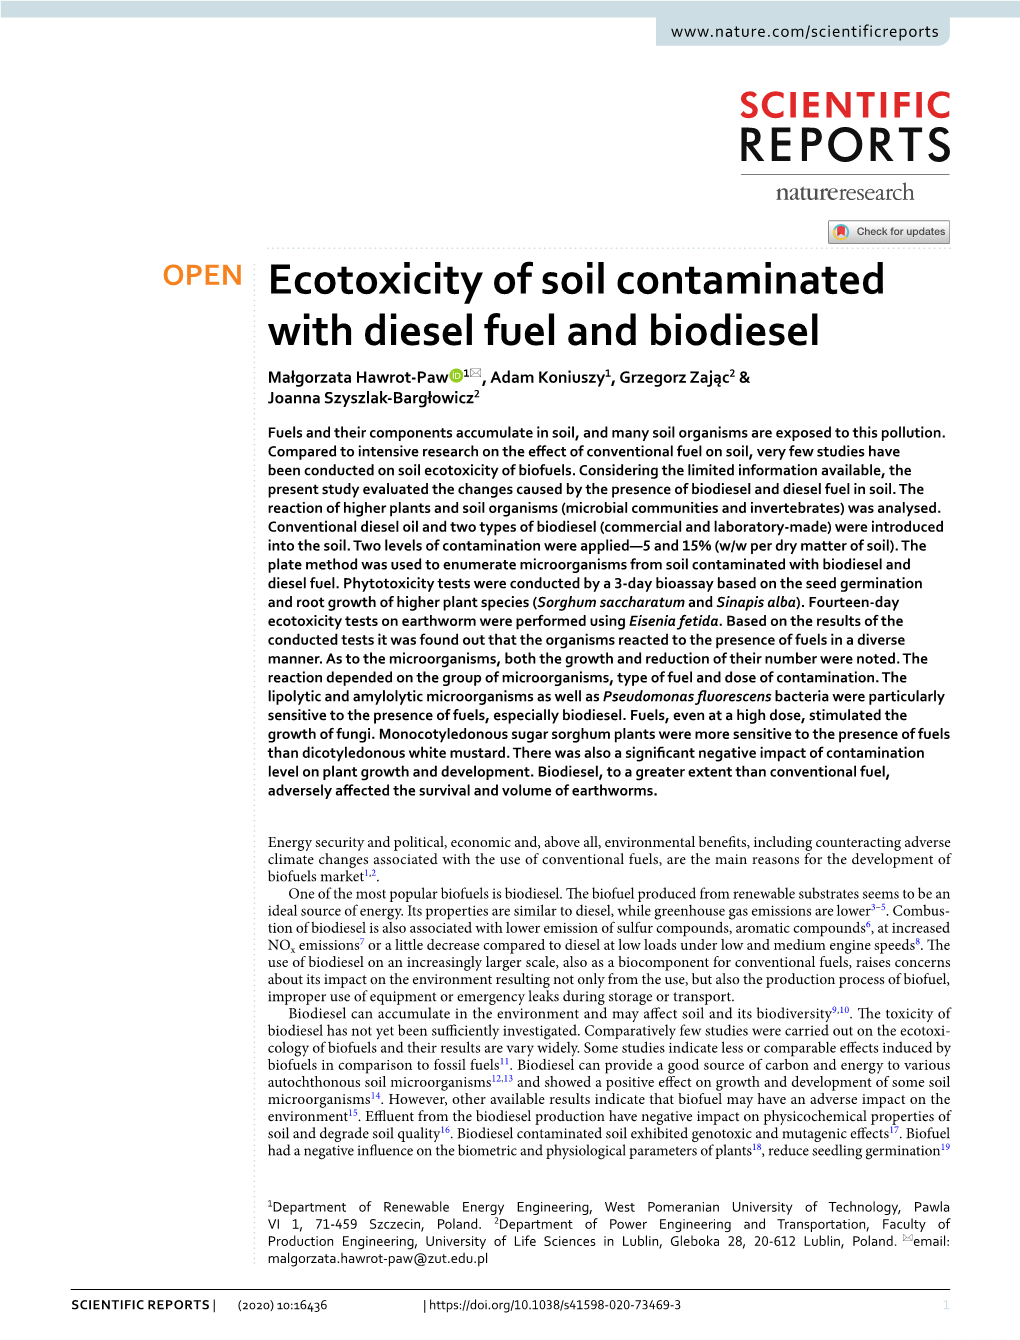 Ecotoxicity of Soil Contaminated with Diesel Fuel and Biodiesel Małgorzata Hawrot‑Paw 1*, Adam Koniuszy1, Grzegorz Zając2 & Joanna Szyszlak‑Bargłowicz2